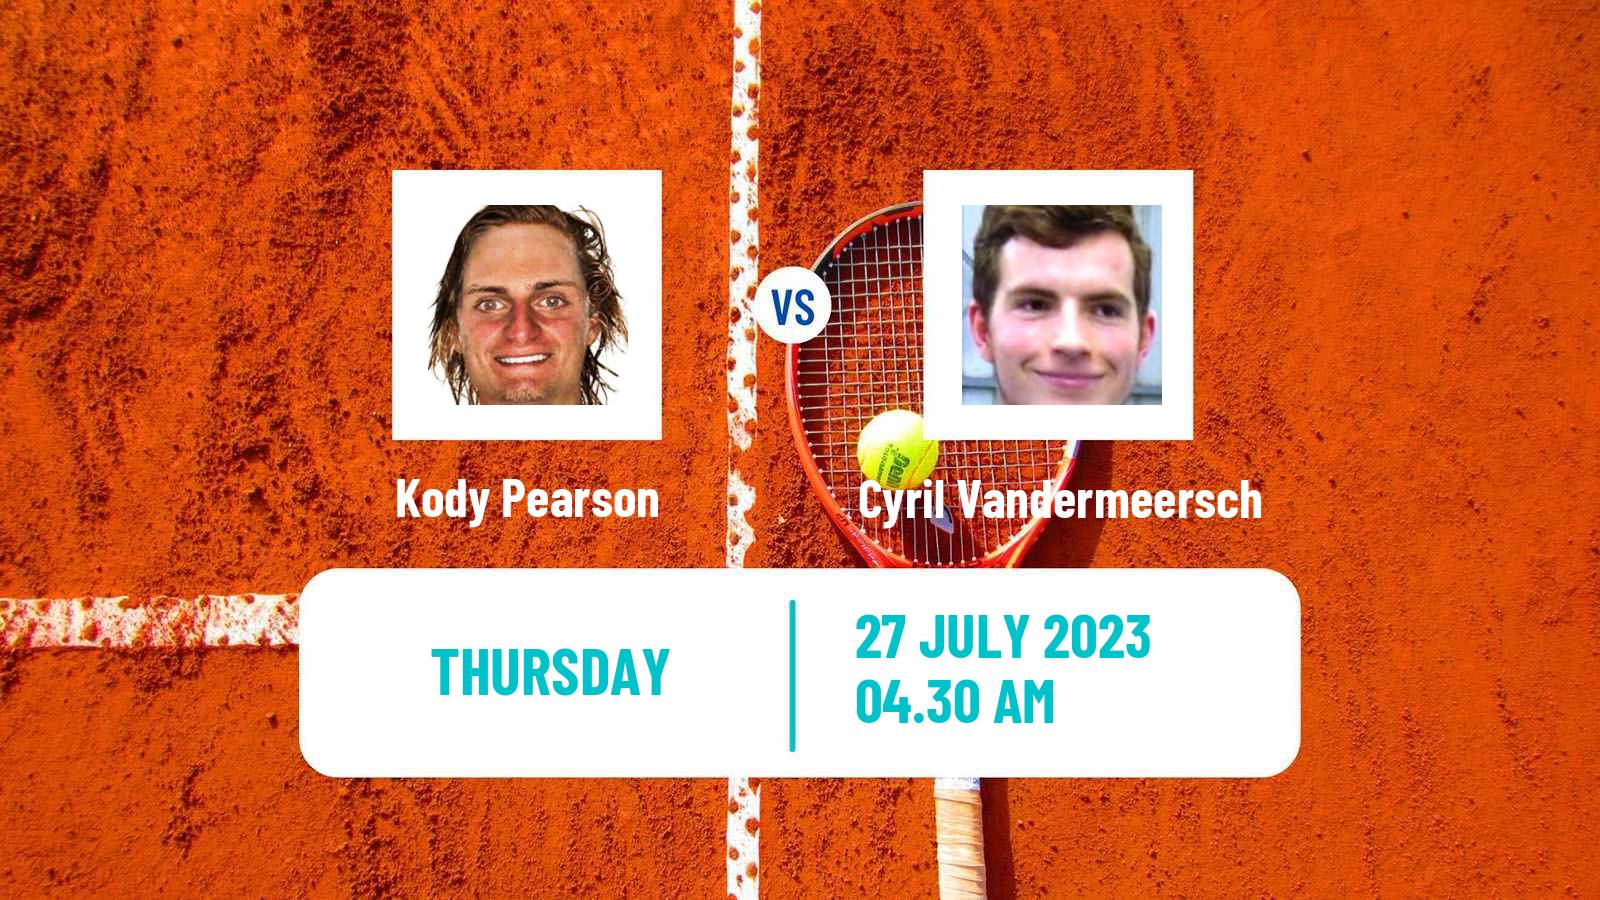 Tennis ITF M15 Monastir 30 Men Kody Pearson - Cyril Vandermeersch